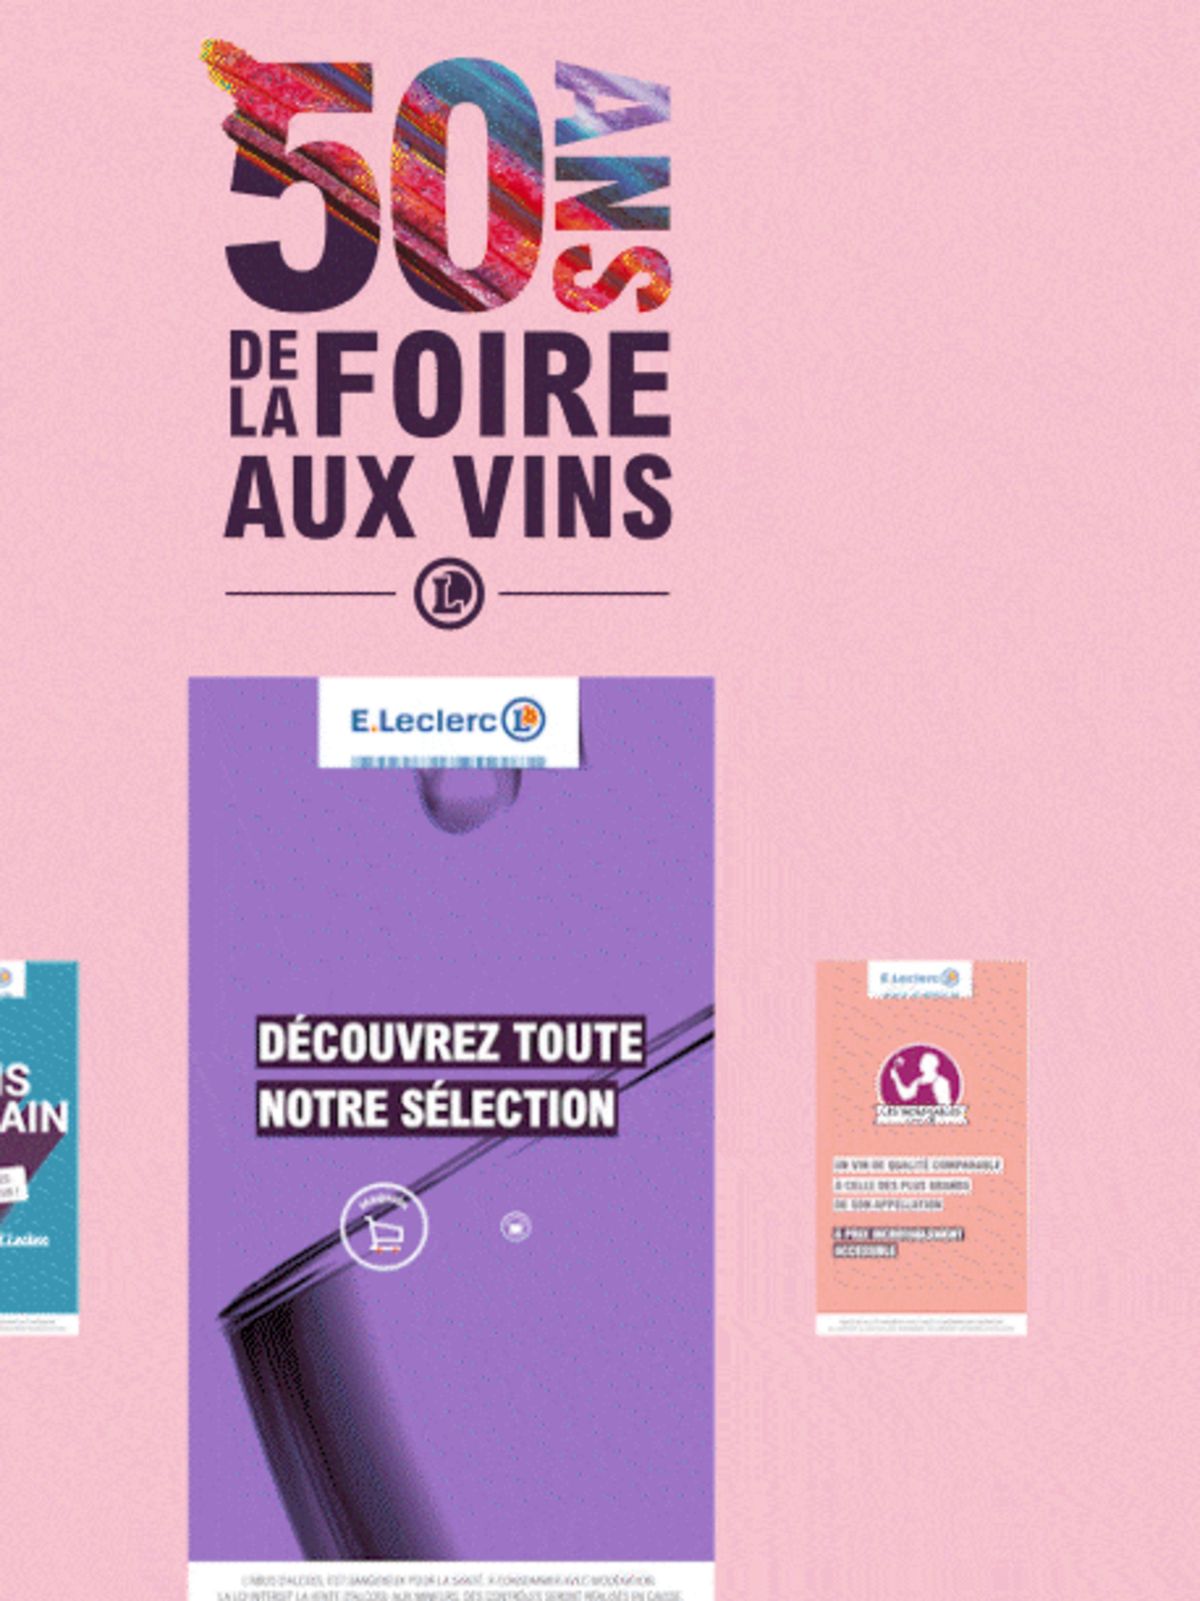 Catalogue Foire Aux Vins - Mixte, page 00400